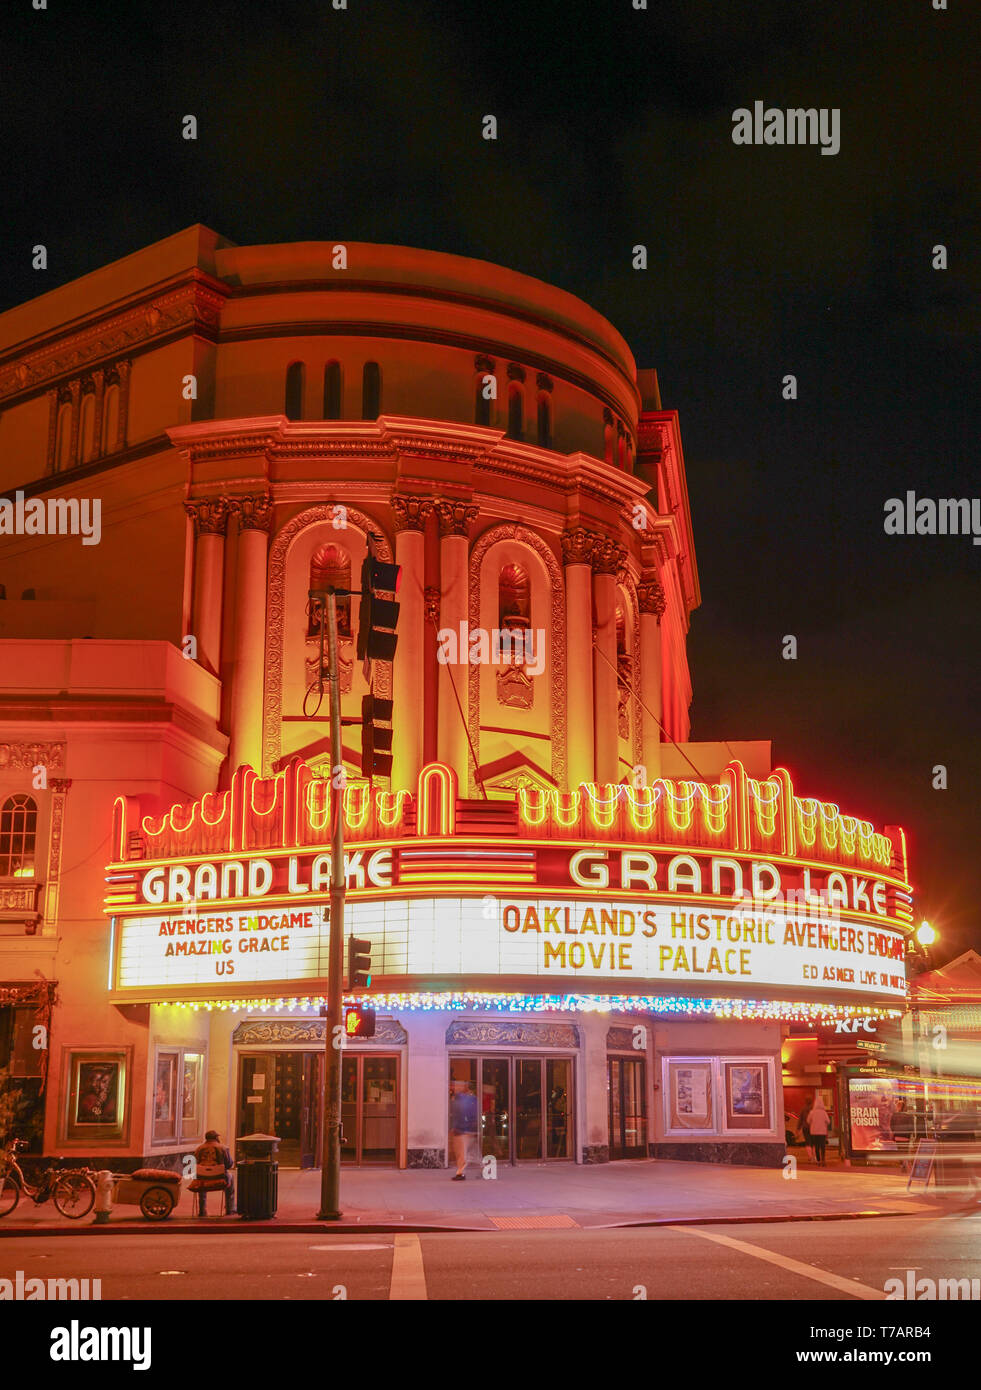 OAKLAND, Kalifornien - 4. Mai 2019: Abend am Grand Lake Theater, einem historischen Film Palast im Grand Lake Nachbarschaft von Oakland, Kalifornien entfernt Stockfoto